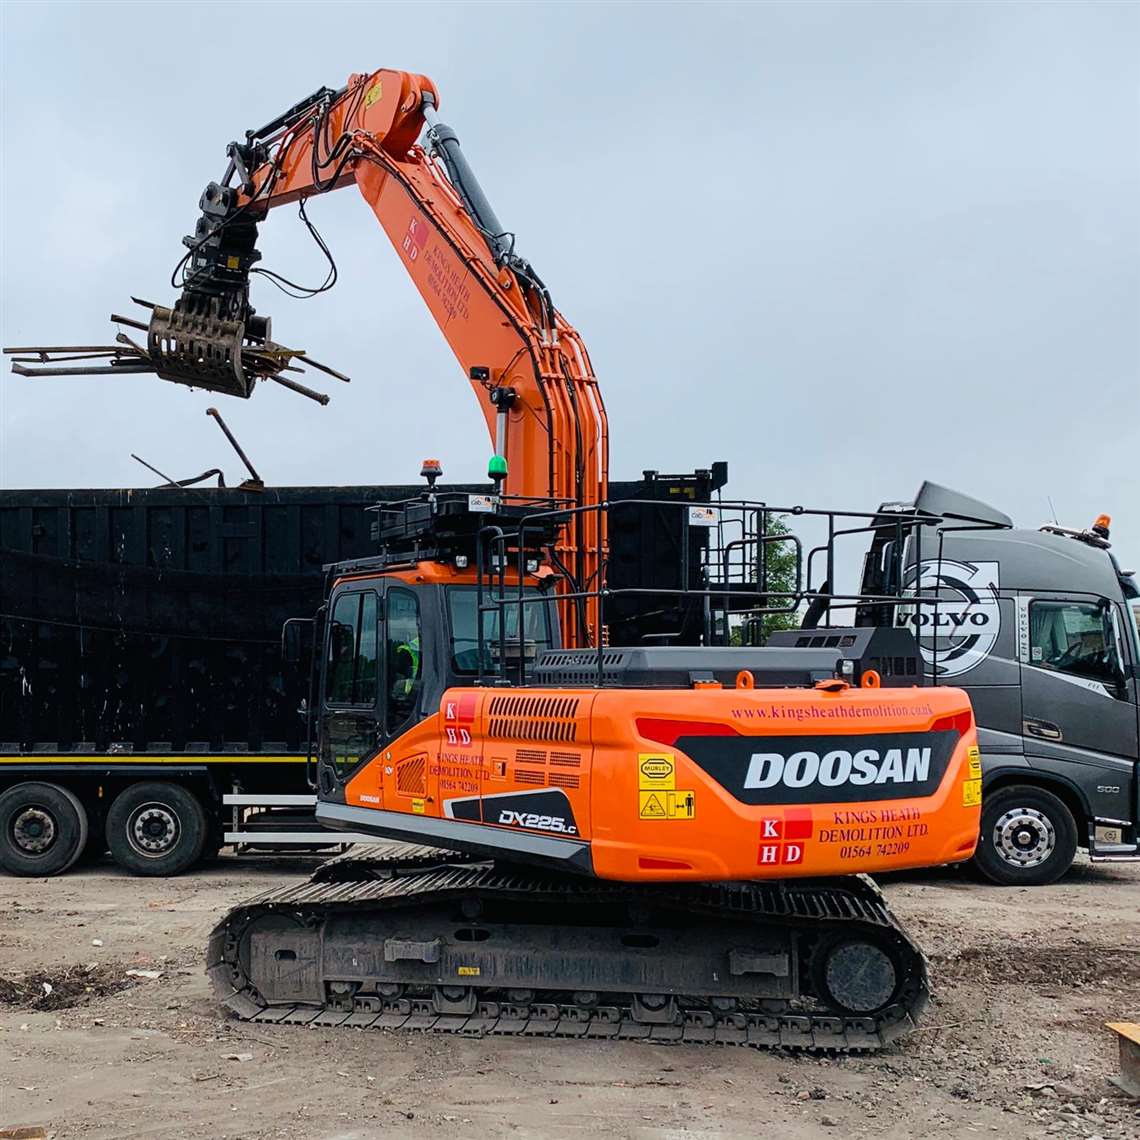 Kings Heath Demolition's new Doosan DX225LC-5 excavator